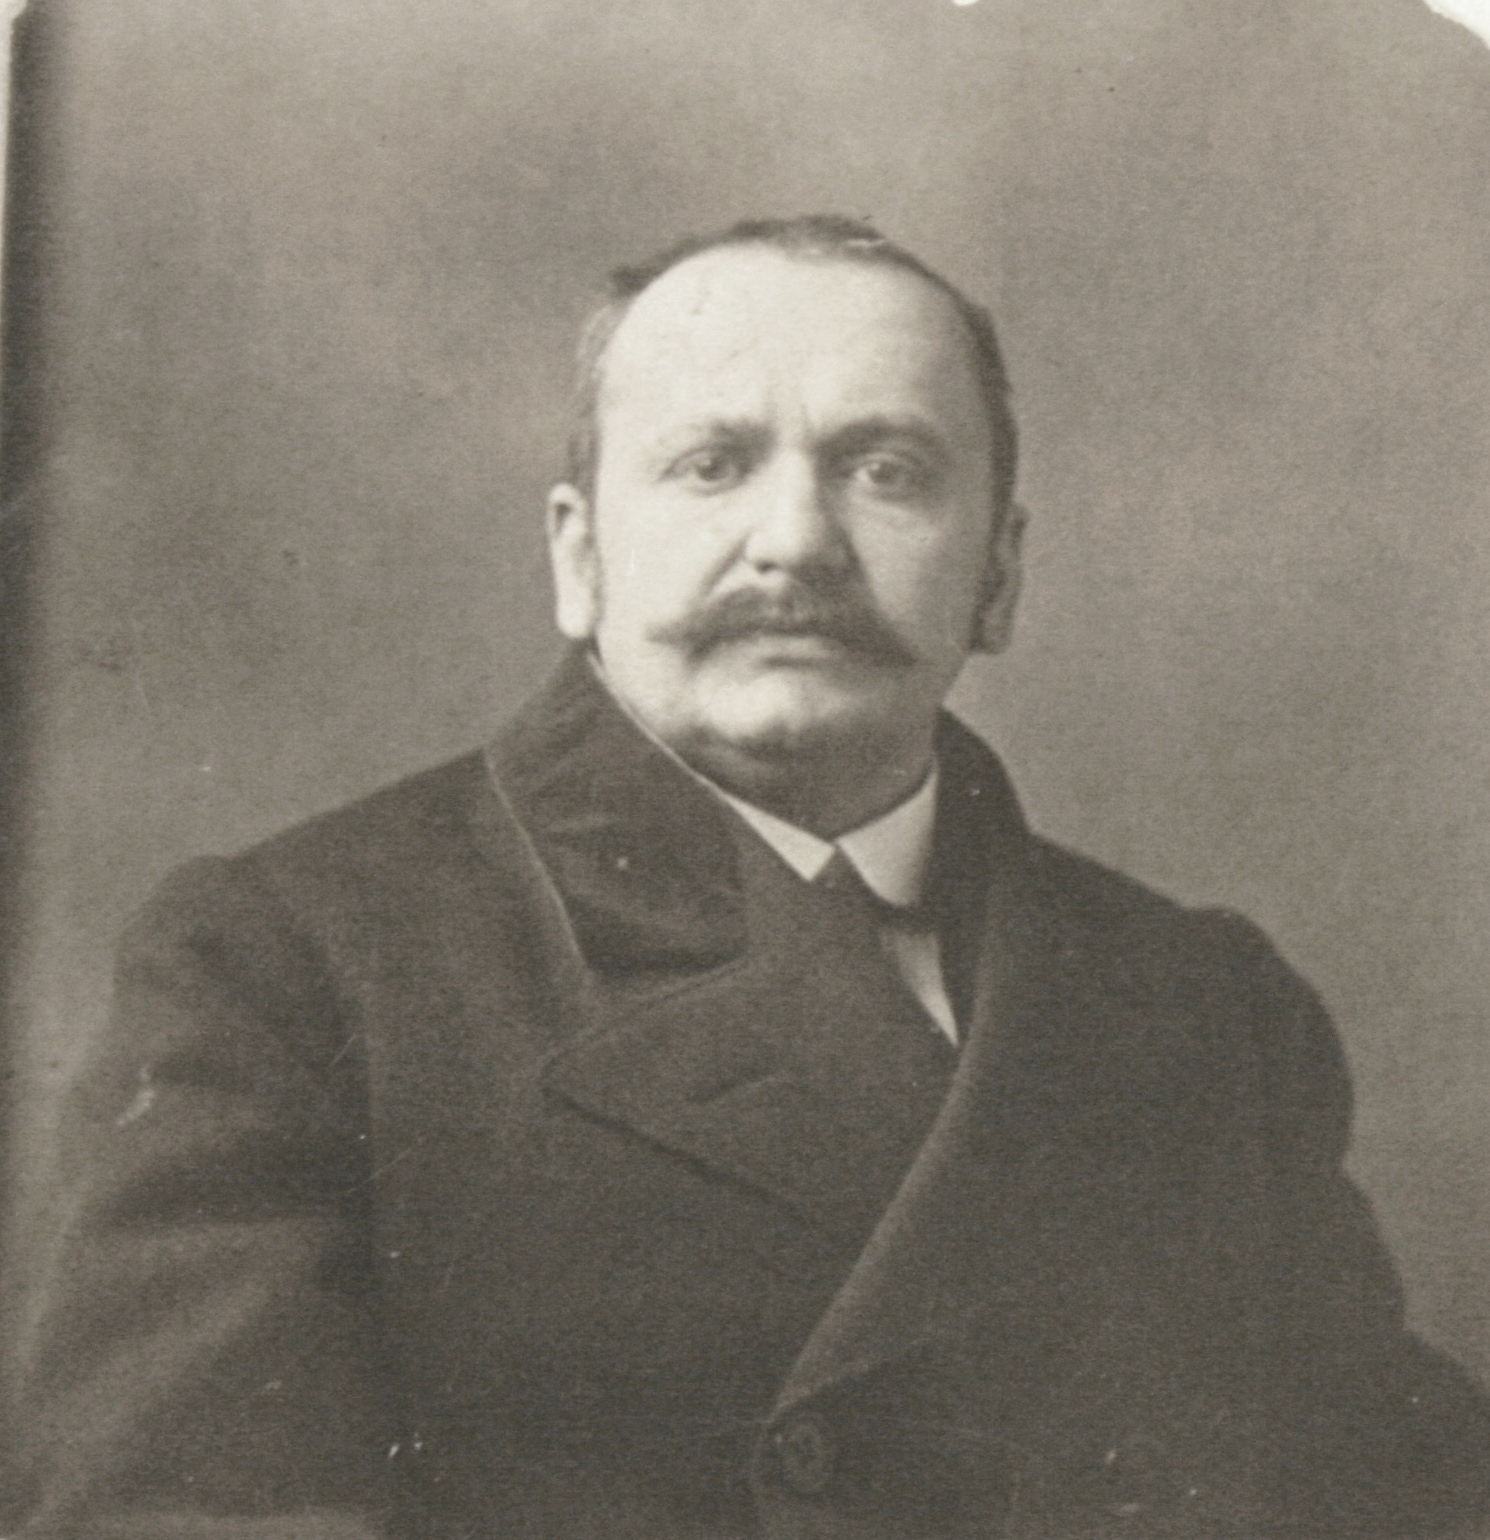 István Bibó's father: István Bibó Sr., director of the University Library Szeged, 1910s